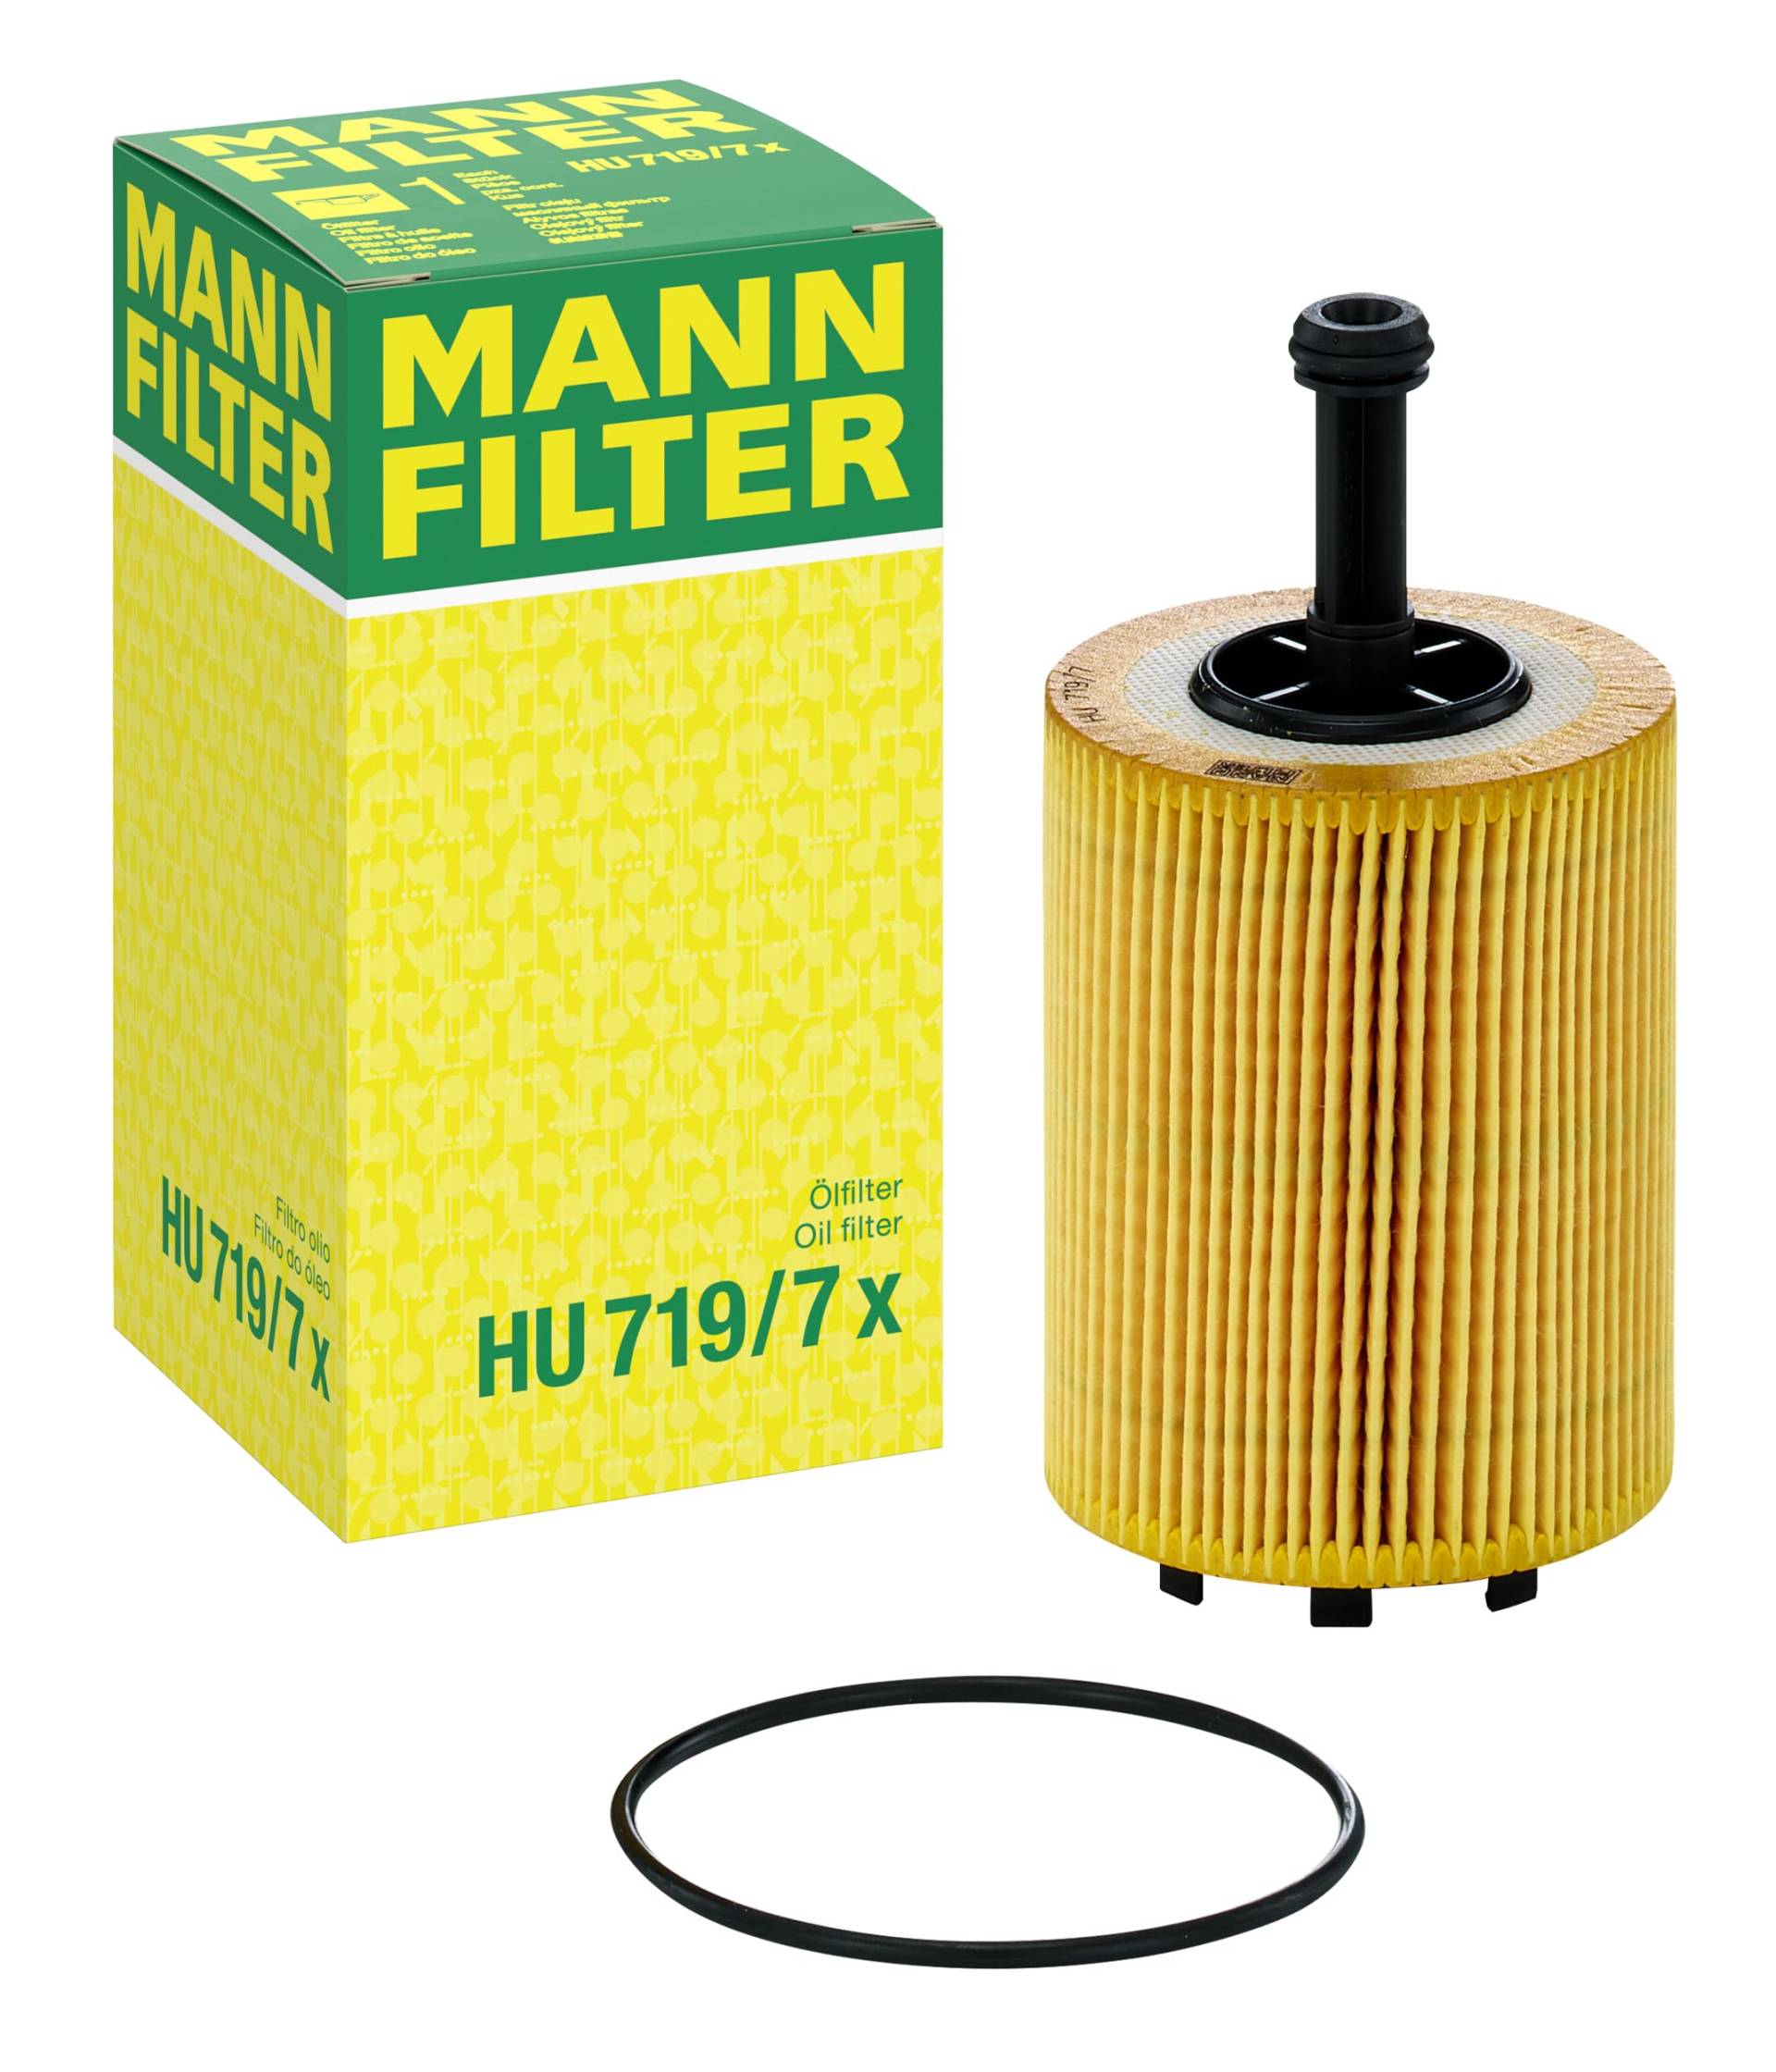 Original MANN-FILTER Ölfilter HU 719/7 X – evotop – Für PKW und Nutzfahrzeuge, Yellow von MANN-FILTER